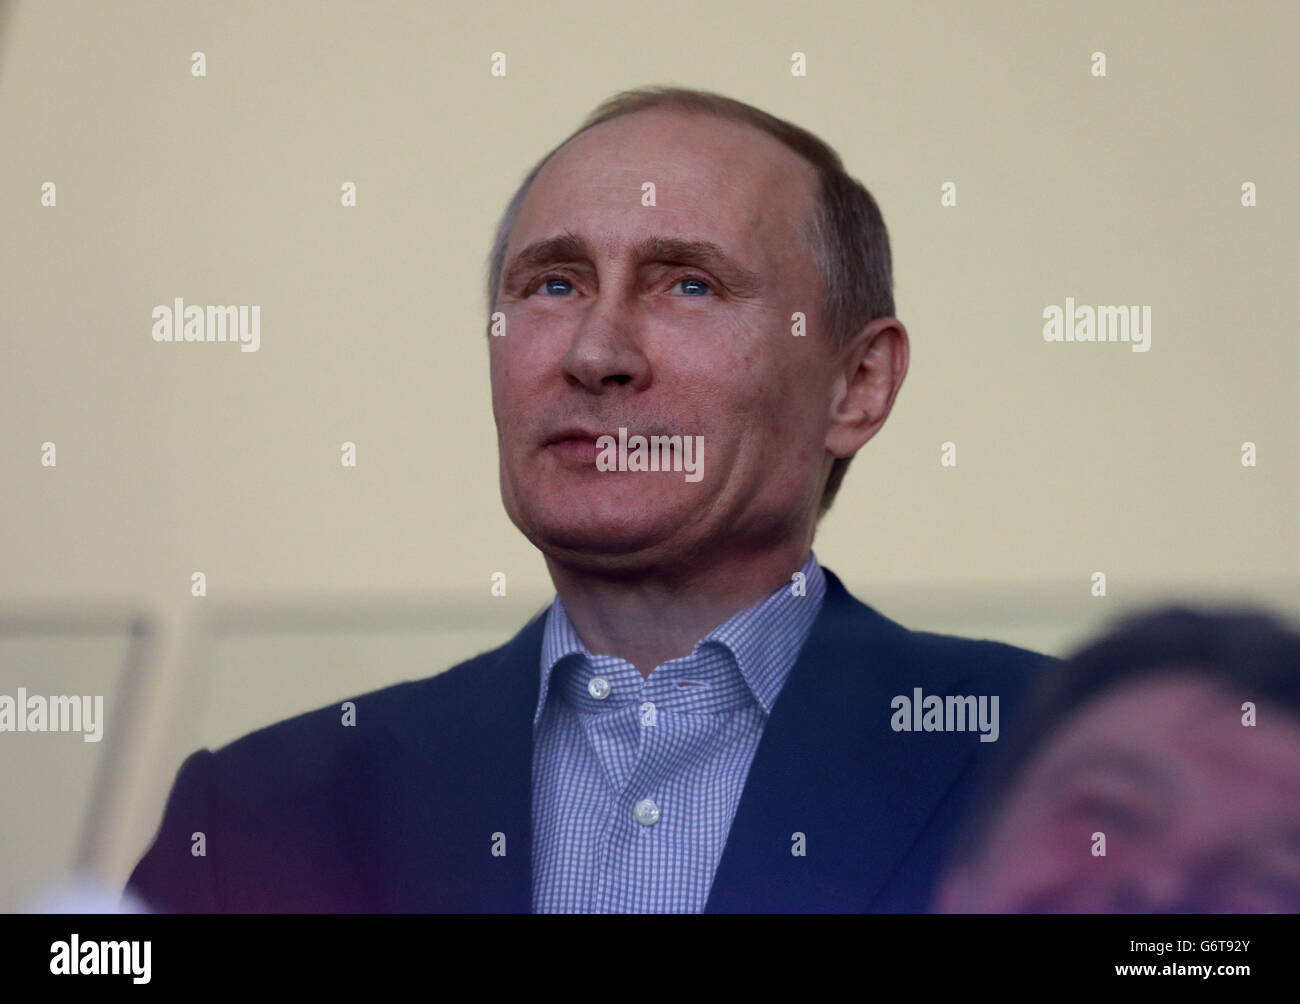 Der russische Präsident Wladimir Putin beobachtet, wie die USA während ihres Vorrundenspiels im Bolschoj-Eisdom während der Olympischen Spiele 2014 in Sotschi, Russland, Russland, Russland, Russland spielen. Stockfoto